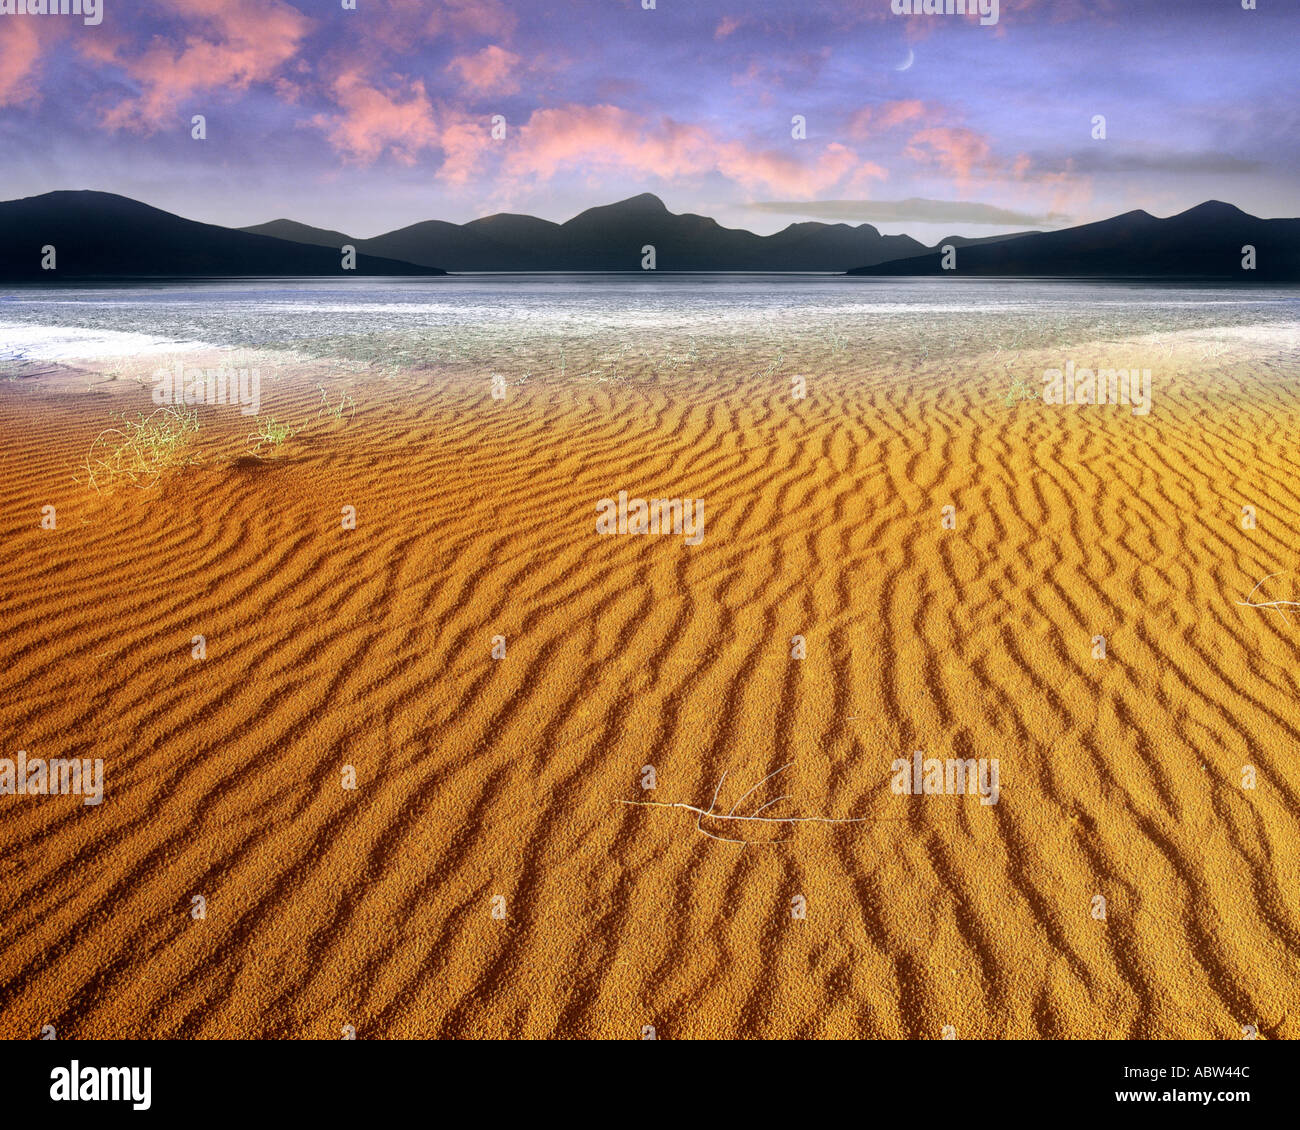 CONCEPT: Fantasy Digital Desert Stock Photo